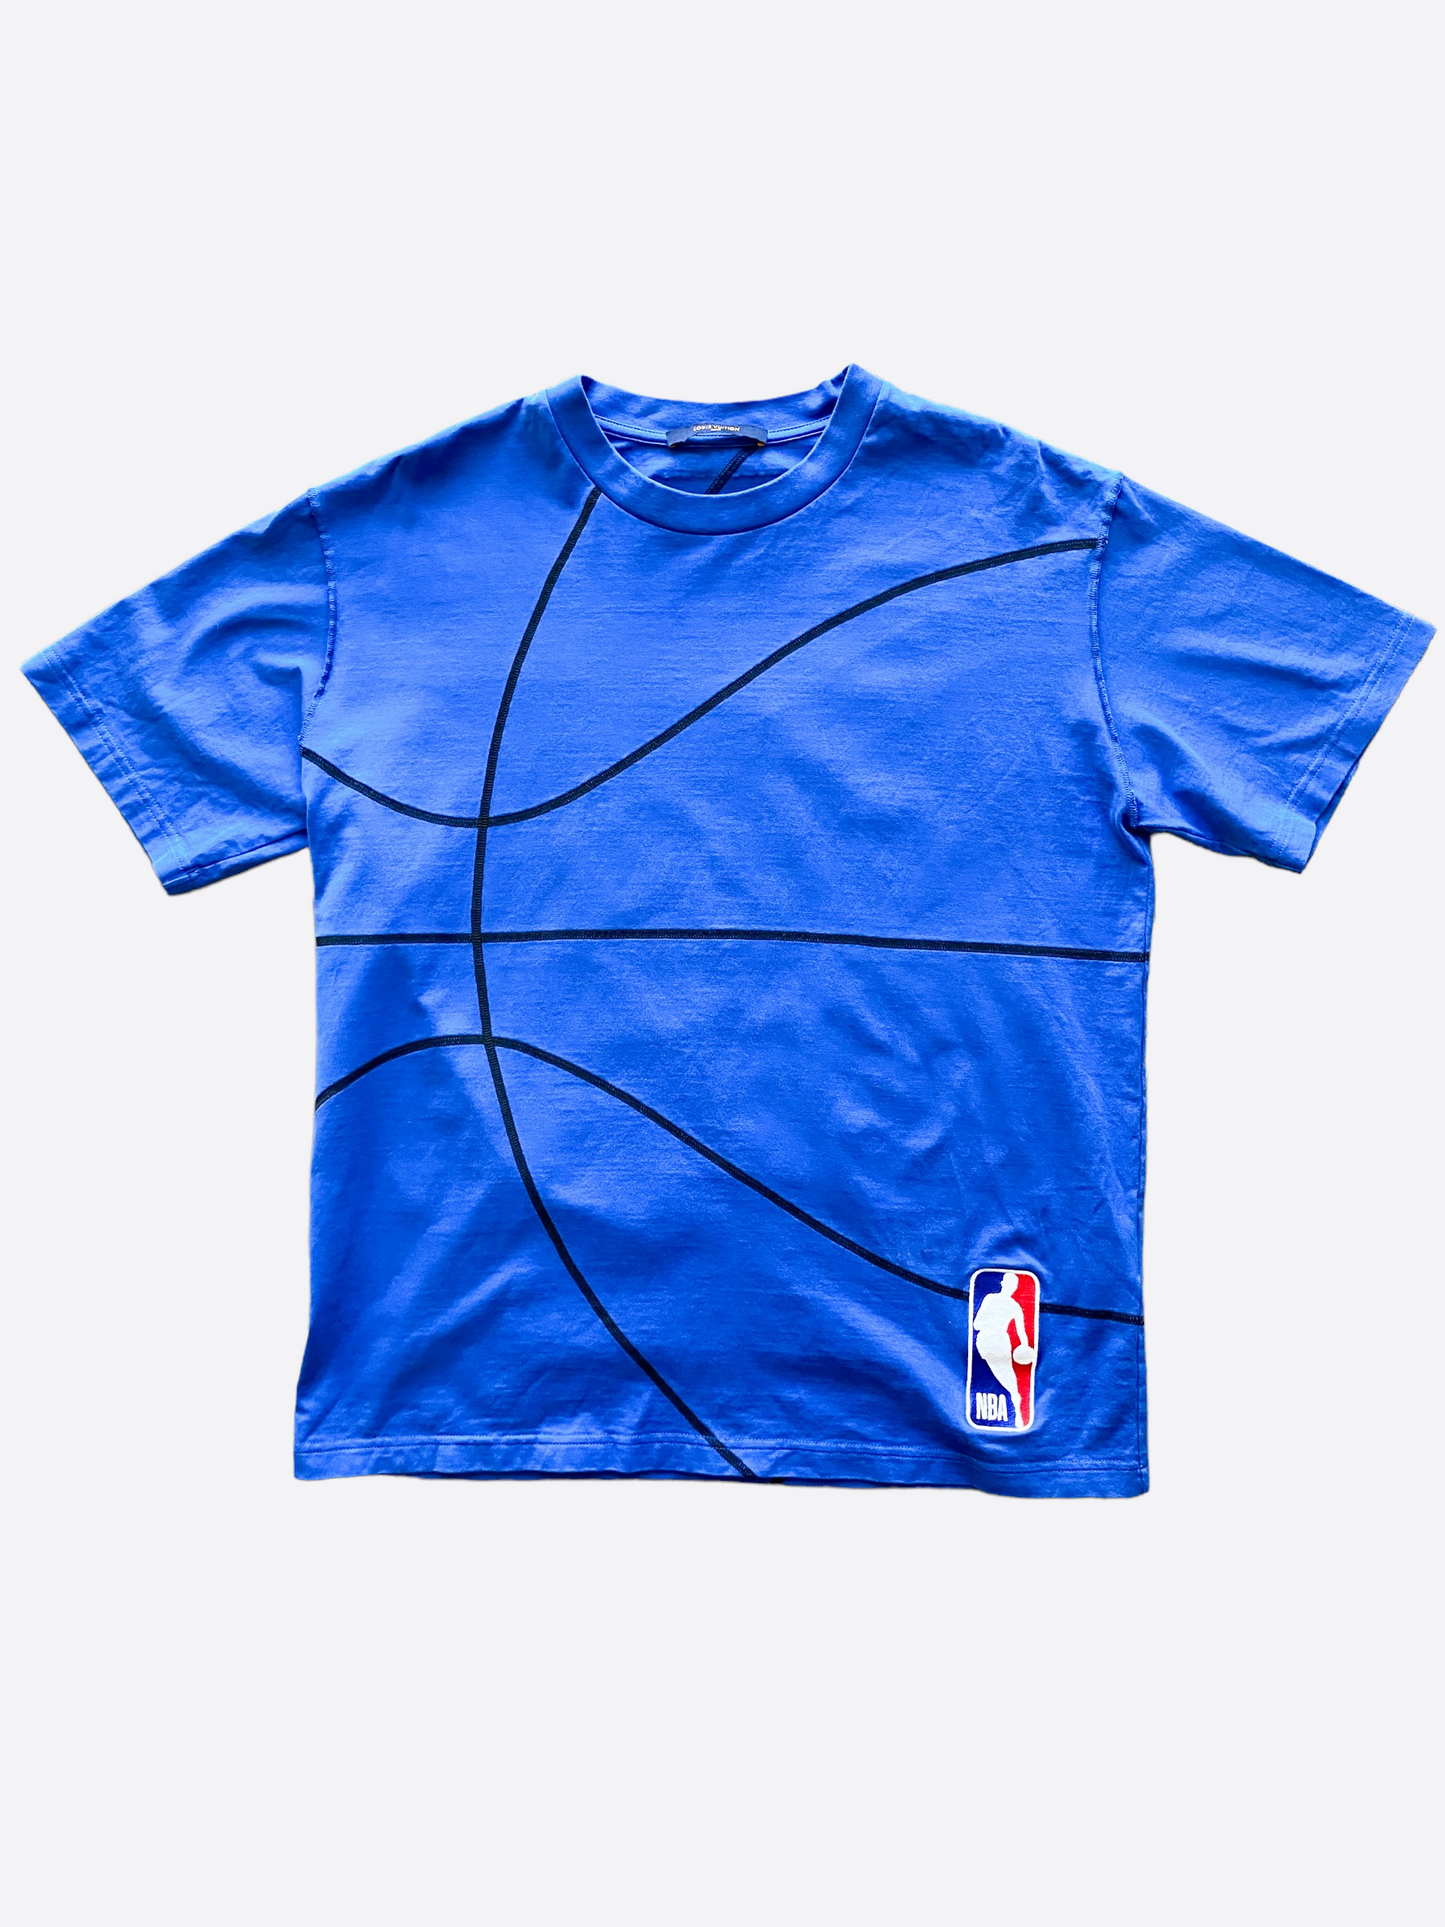 vuitton basketball shirt